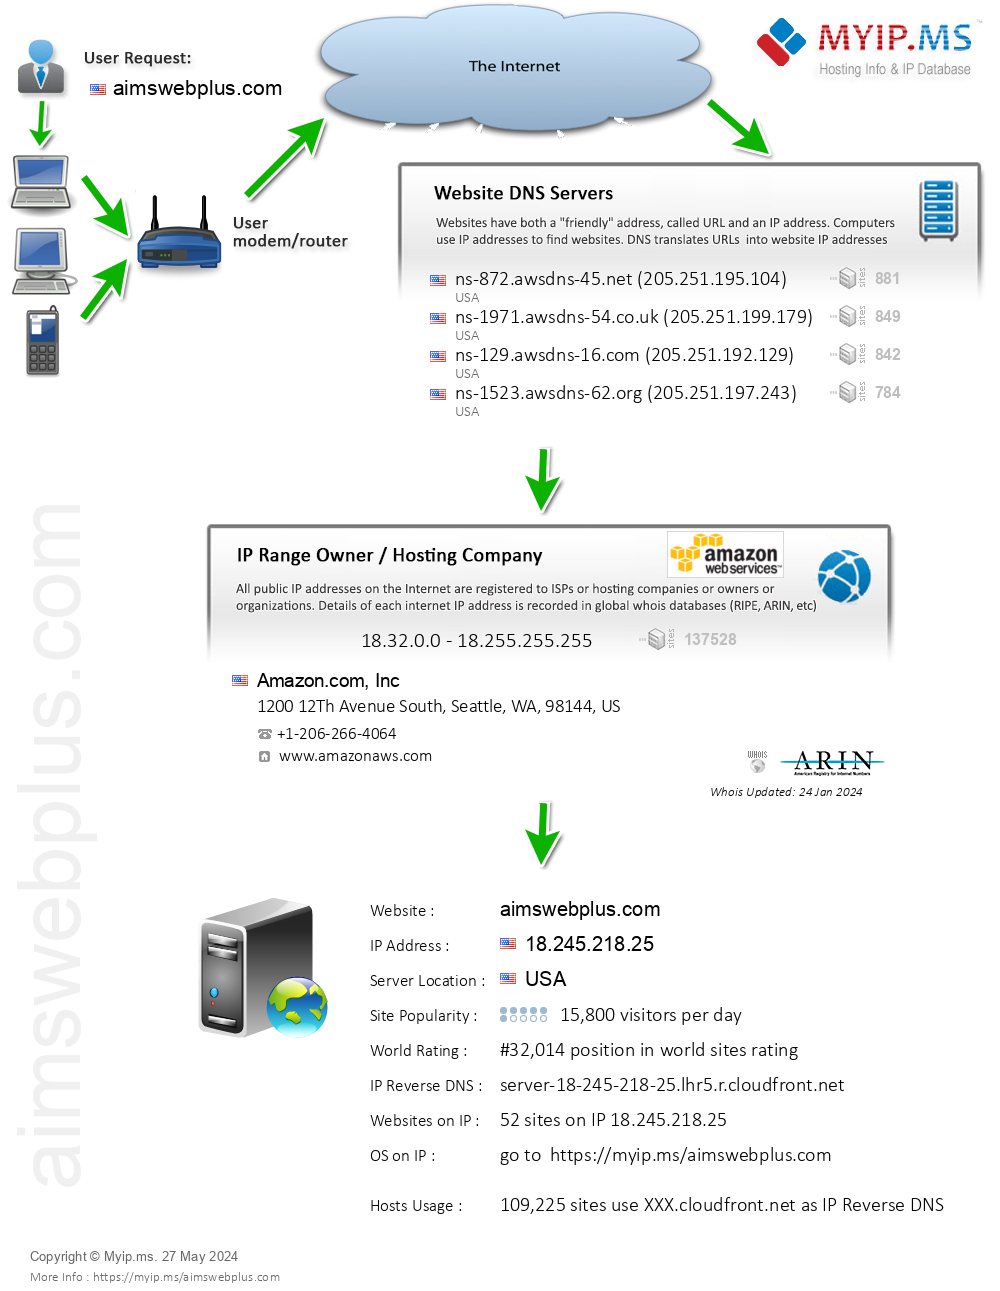 Aimswebplus.com - Website Hosting Visual IP Diagram